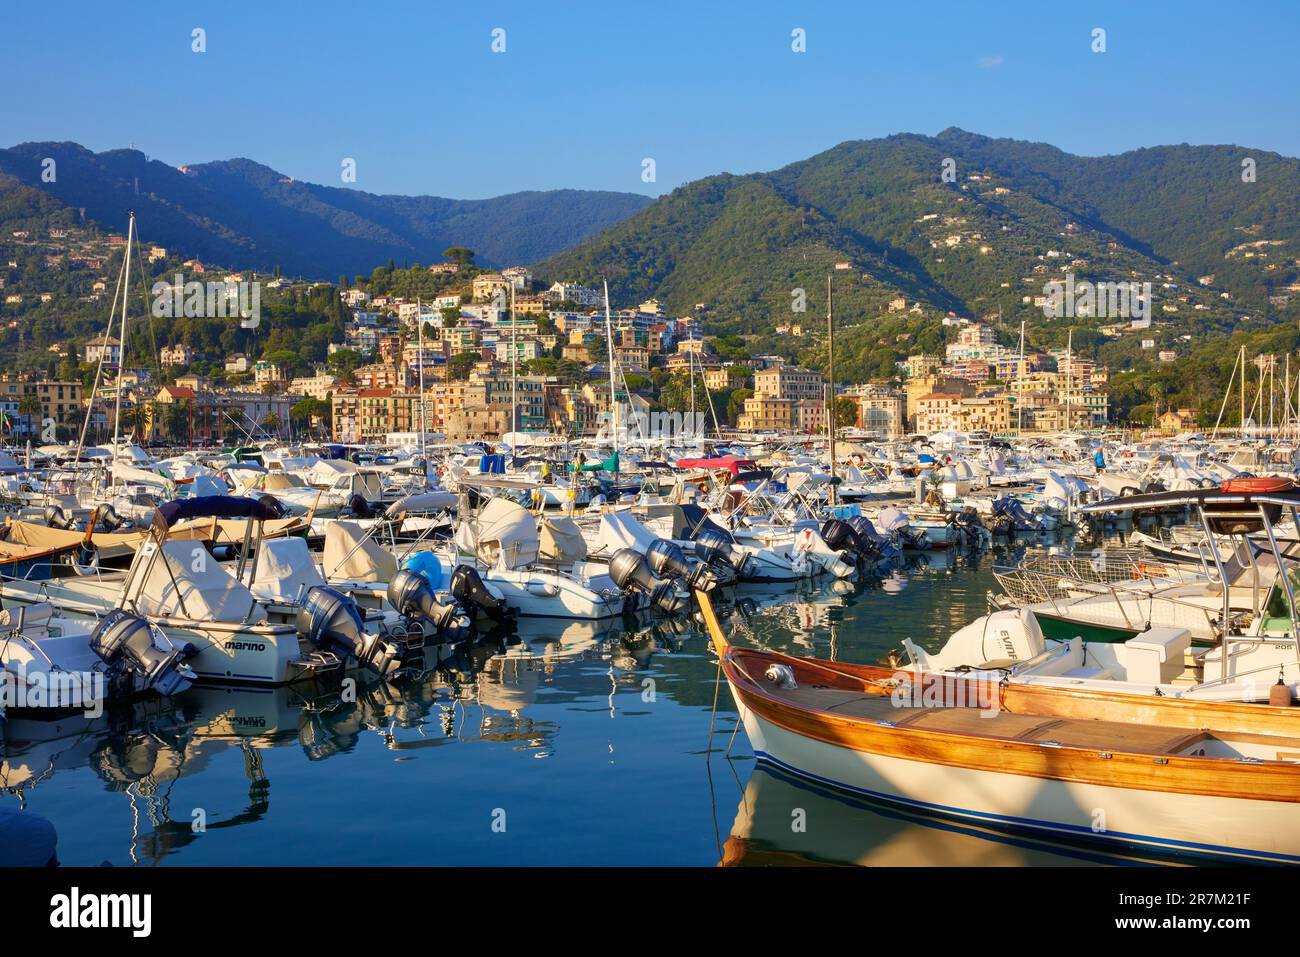 Boats moored in Rapallo Marina, Rapallo, Liguria, Italy Stock Photo